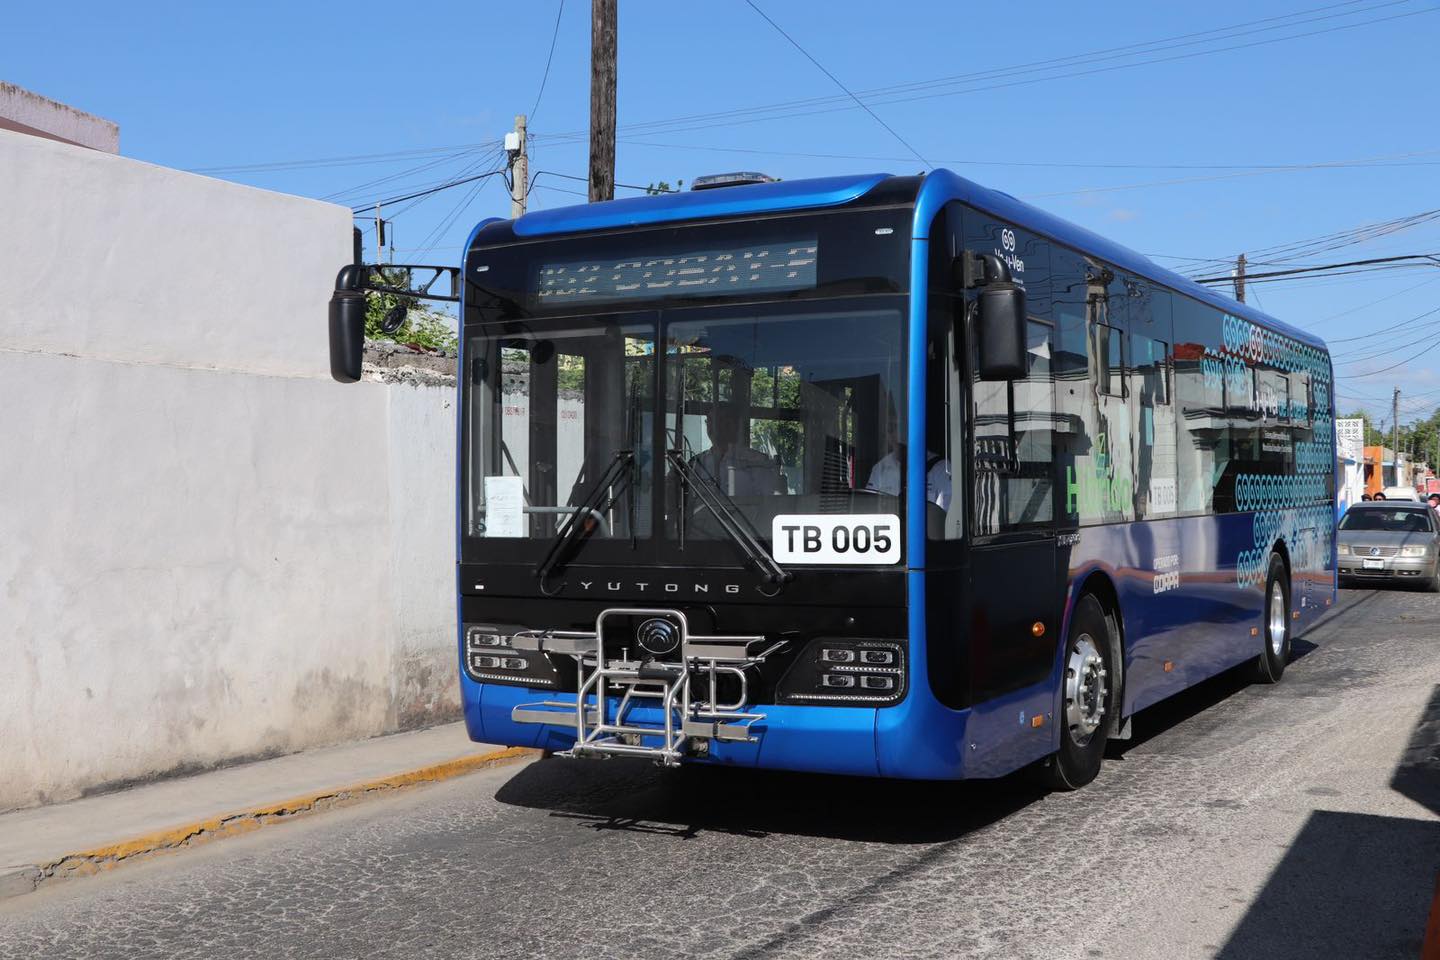 Arribarán 60 nuevas unidades eléctricas de transporte público en Yucatán